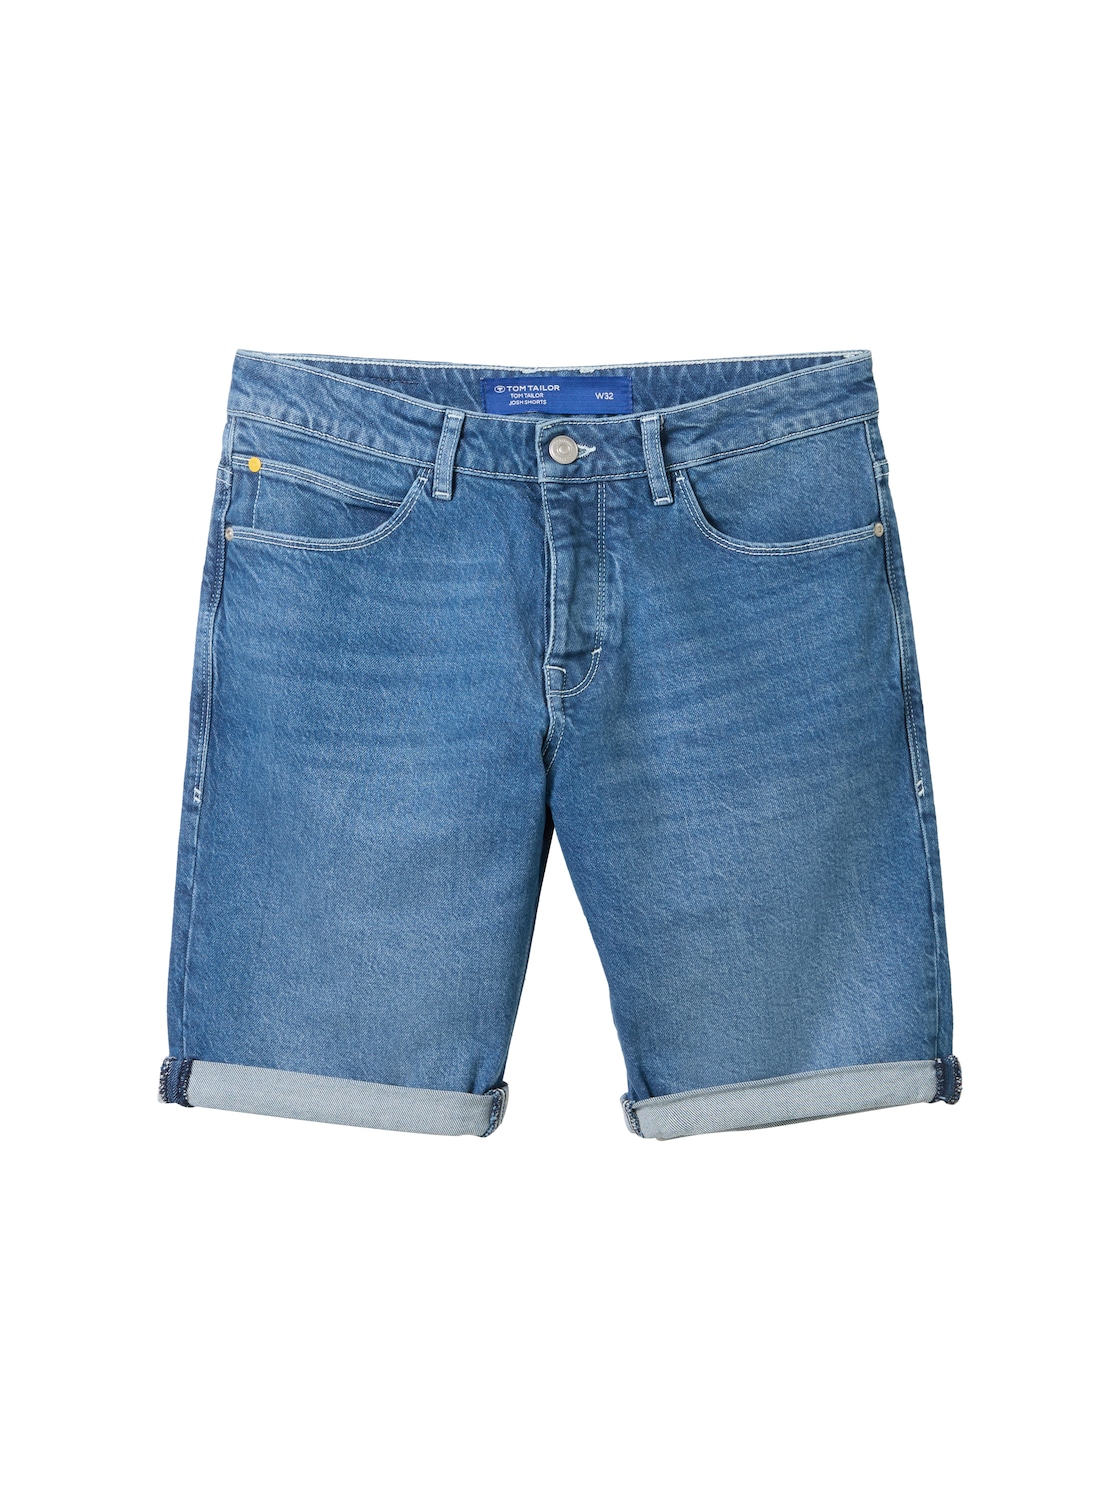 TOM TAILOR Herren Josh Jeans Shorts, blau, Uni, Gr. 29 von Tom Tailor